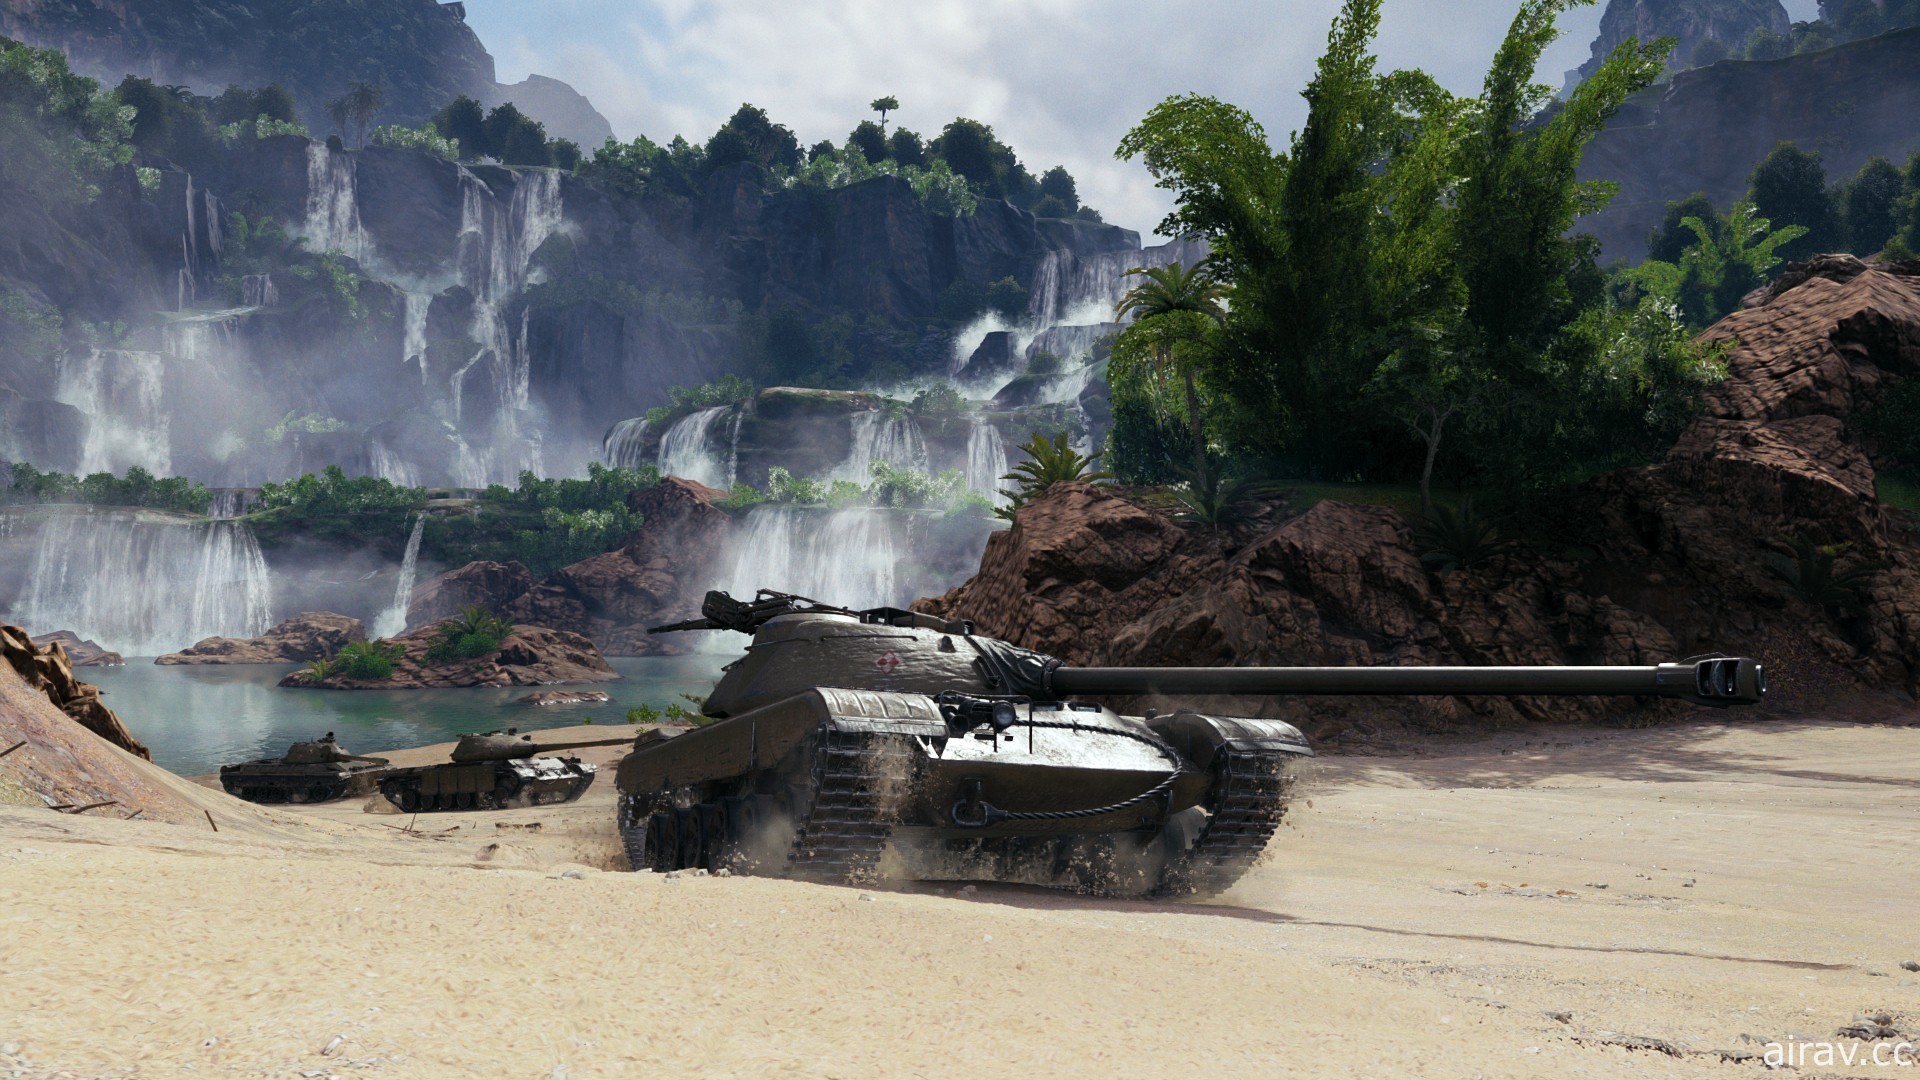 《戰車世界》1.10 版本上線 開放裝備 2.0 與新波蘭中型戰車、地圖 Pearl River 重返遊戲